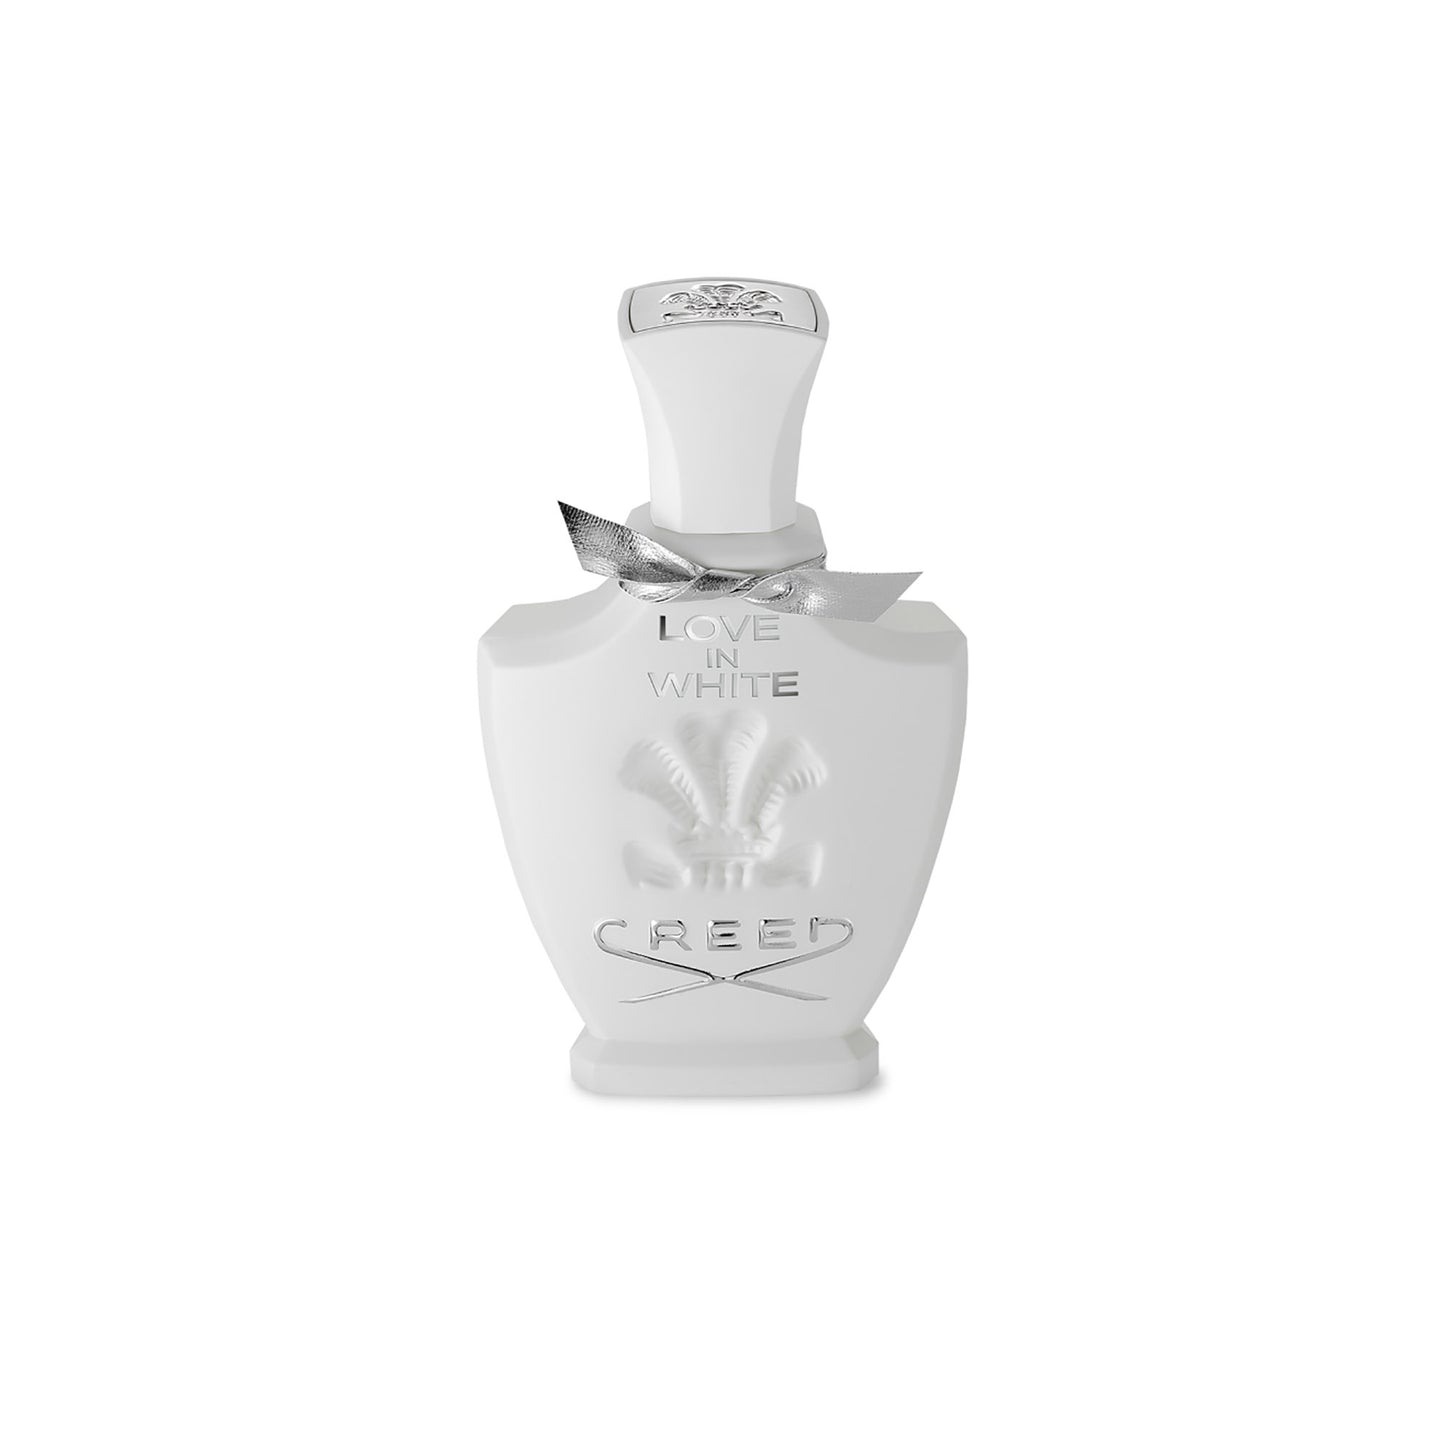 So Avant oz 2.5 Creed White Love Perfume | in Garde